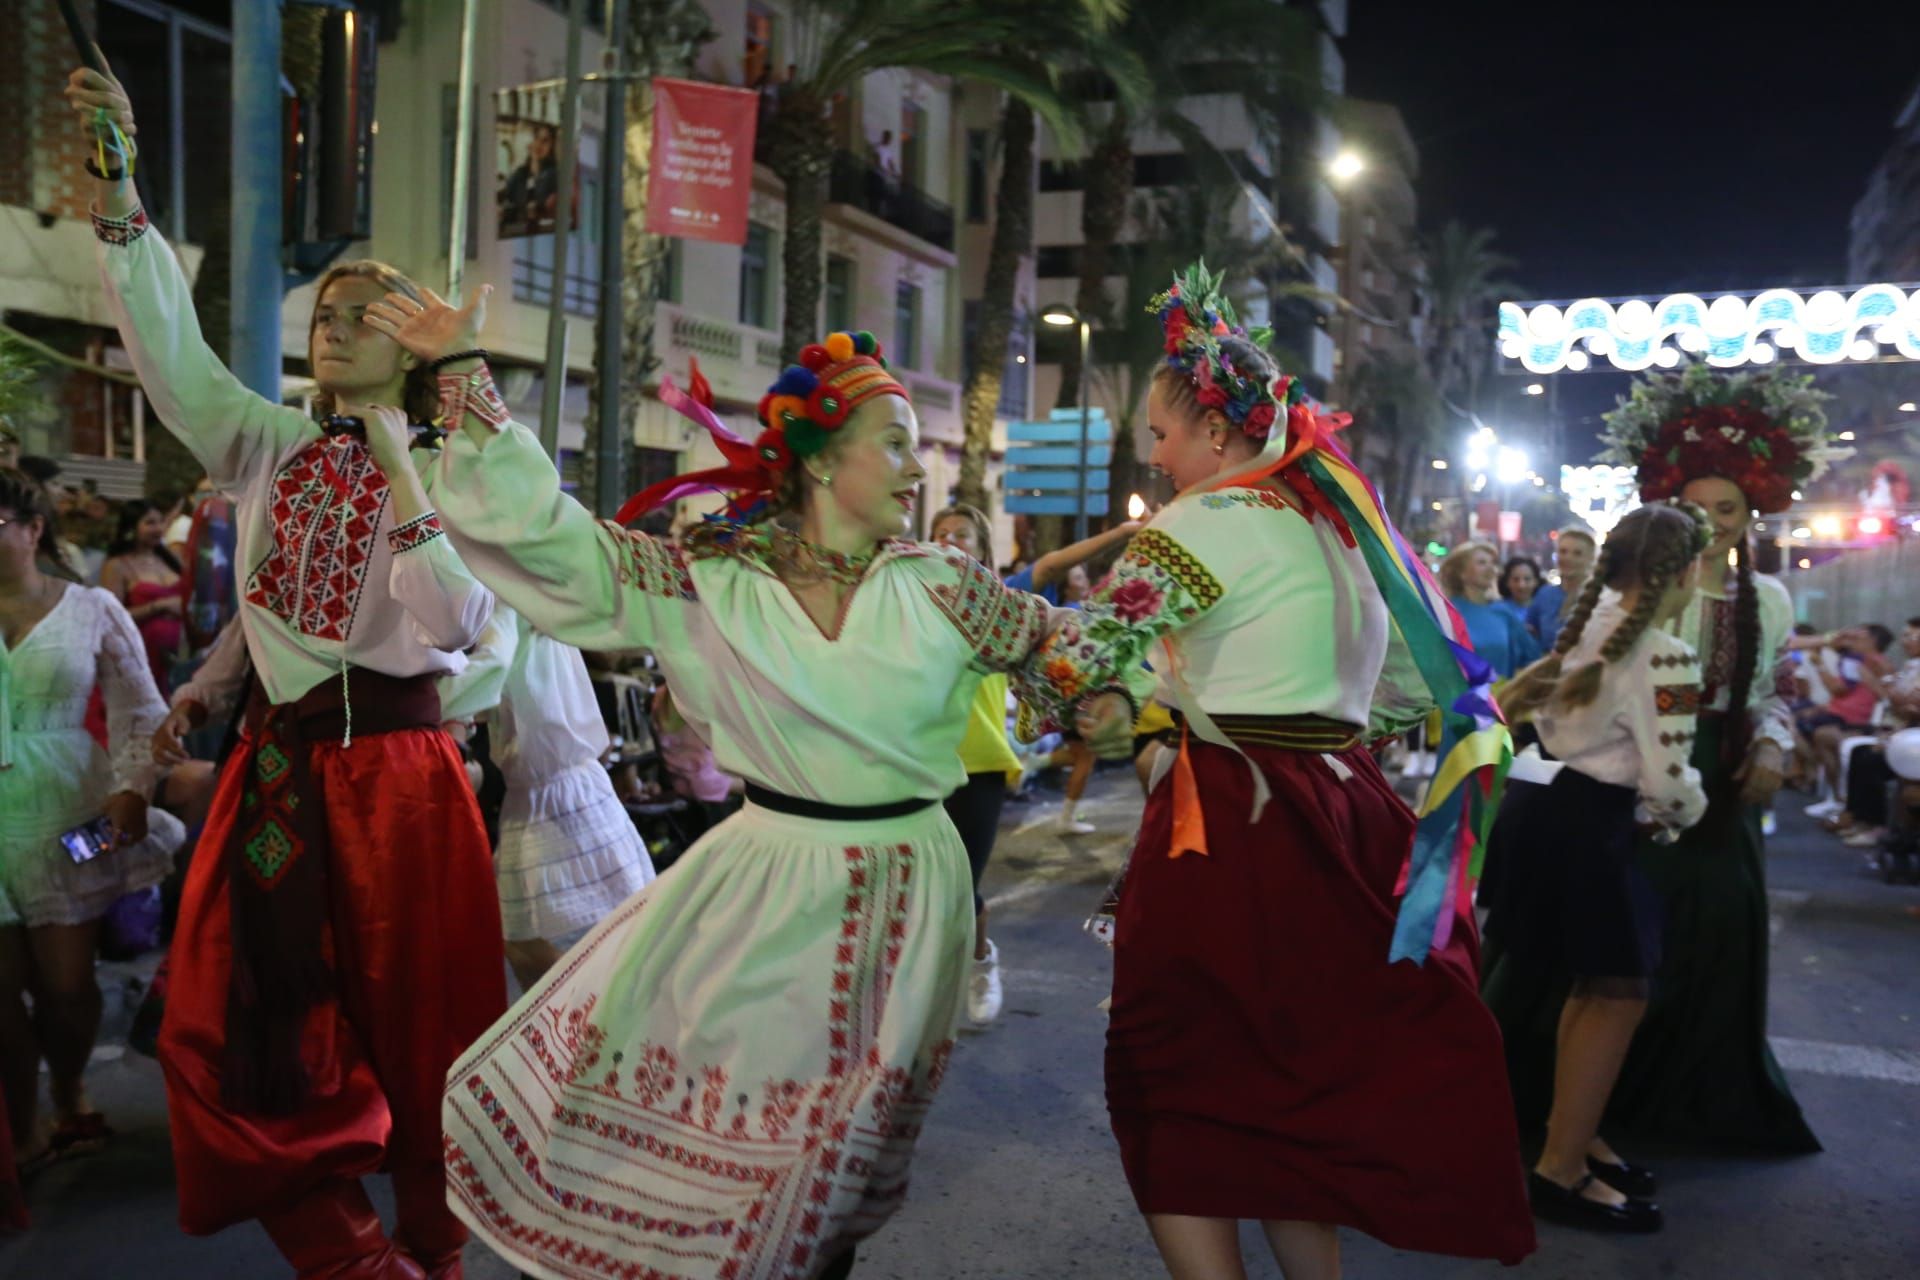 Desfile Folclórico Internacional de las Hogueras de Alicante 2022